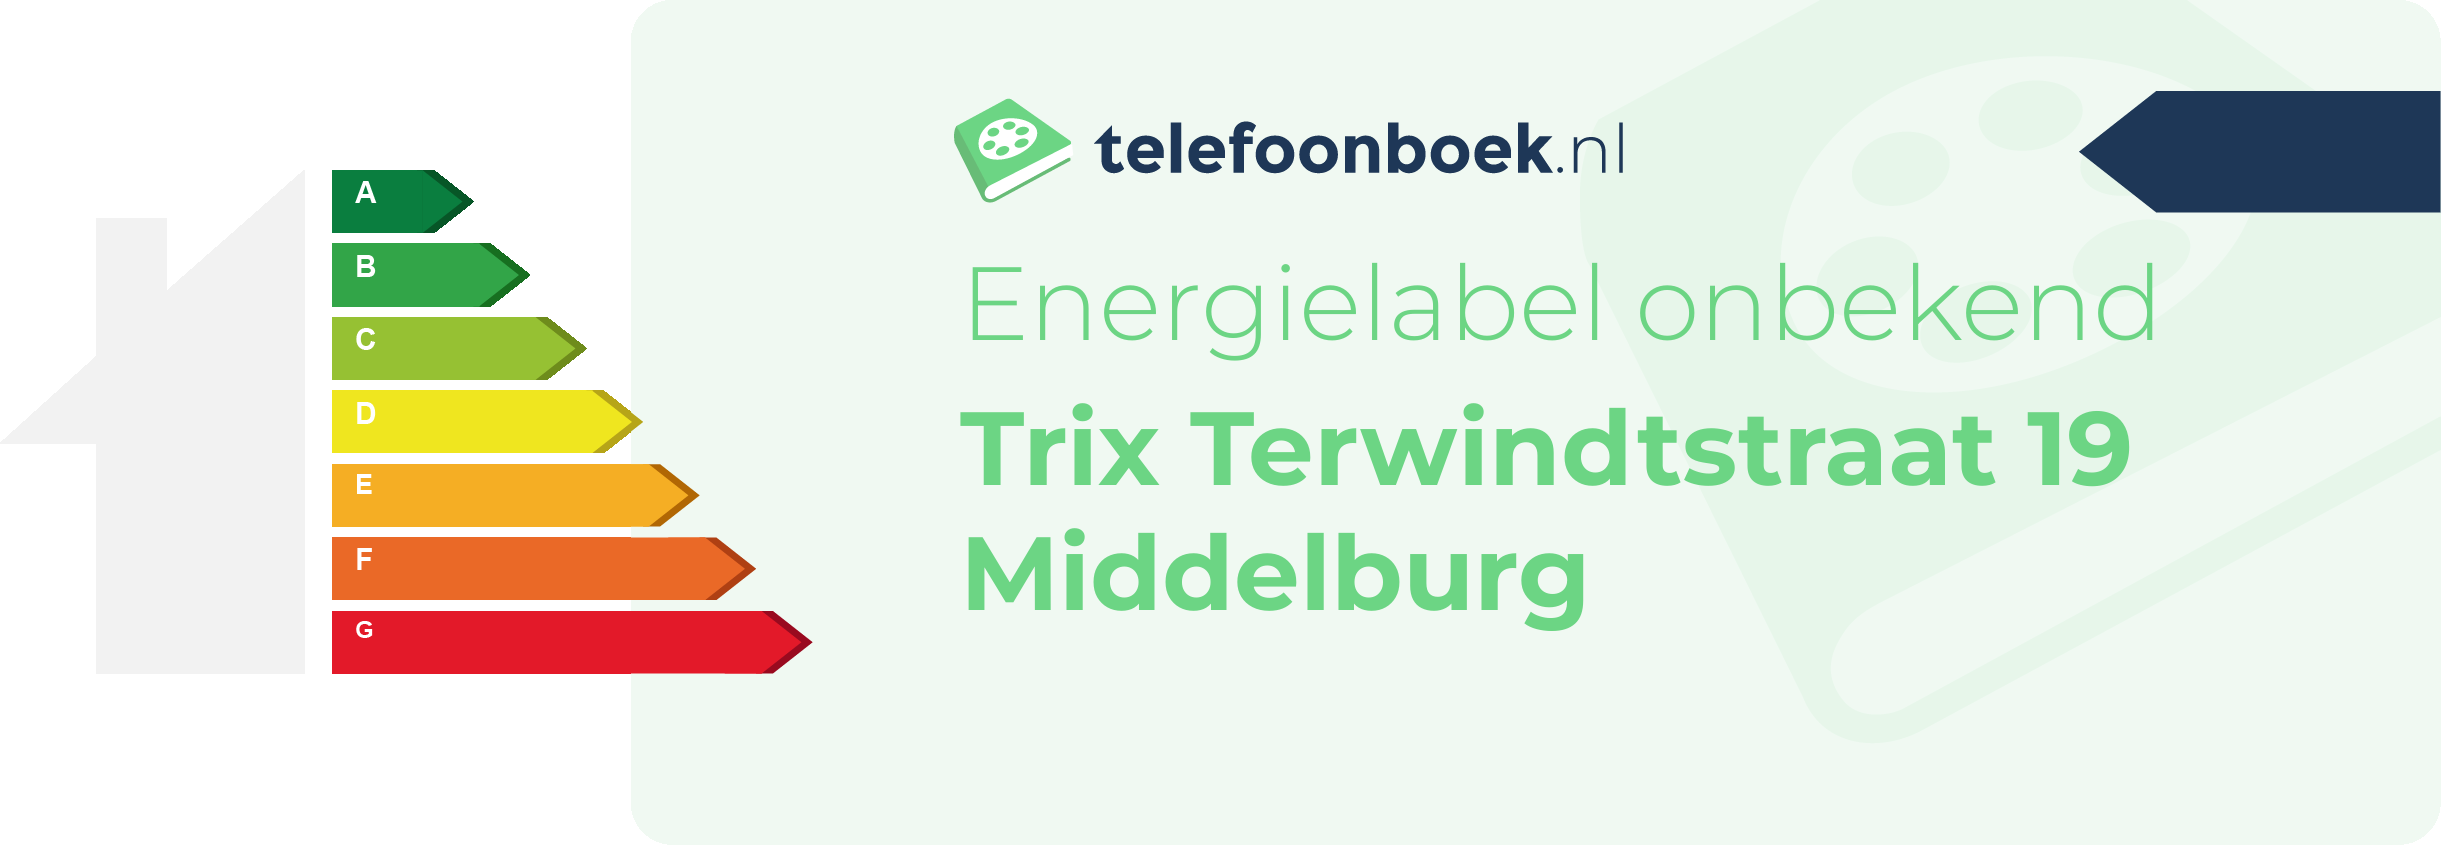 Energielabel Trix Terwindtstraat 19 Middelburg